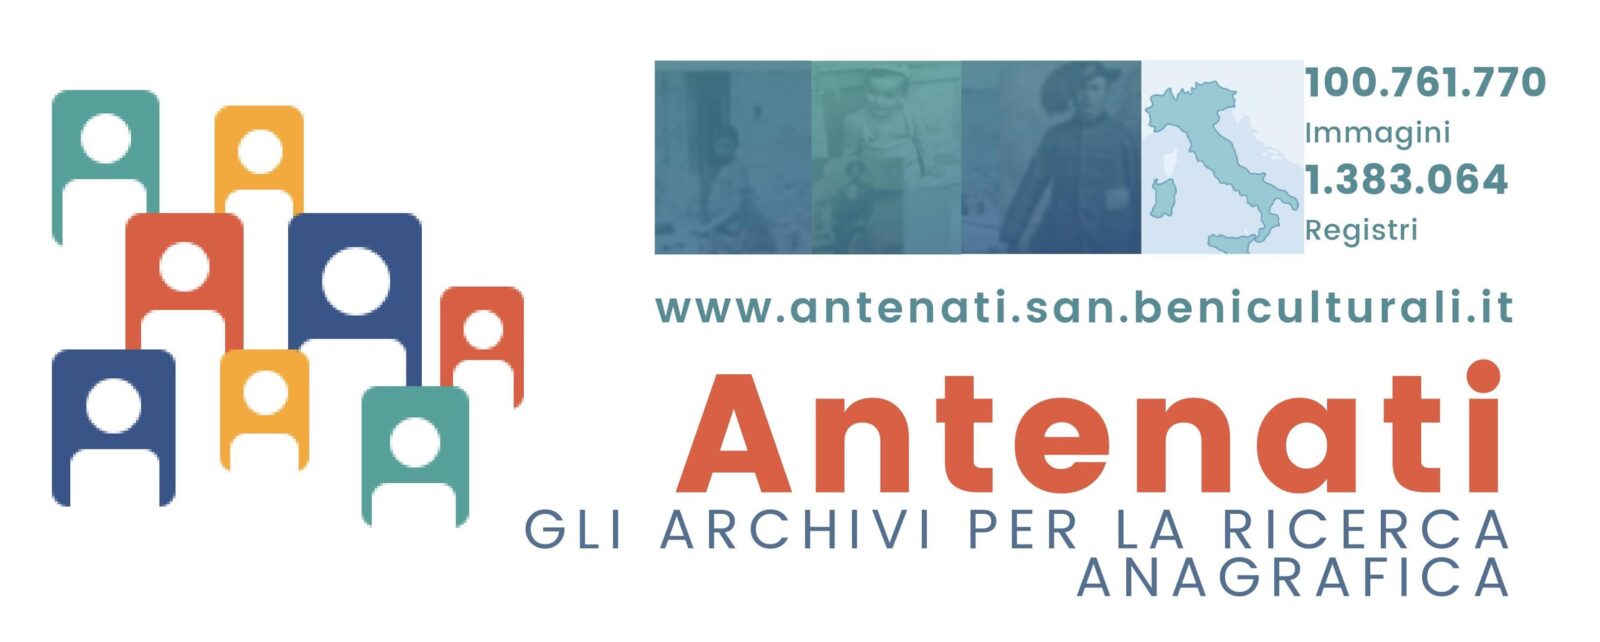 Portale Antenati: GruppoMeta, azienda del gruppo ett, ha sviluppato la nuova piattaforma tecnologica di Antenati (Archivi per la Ricerca Anagrafica)